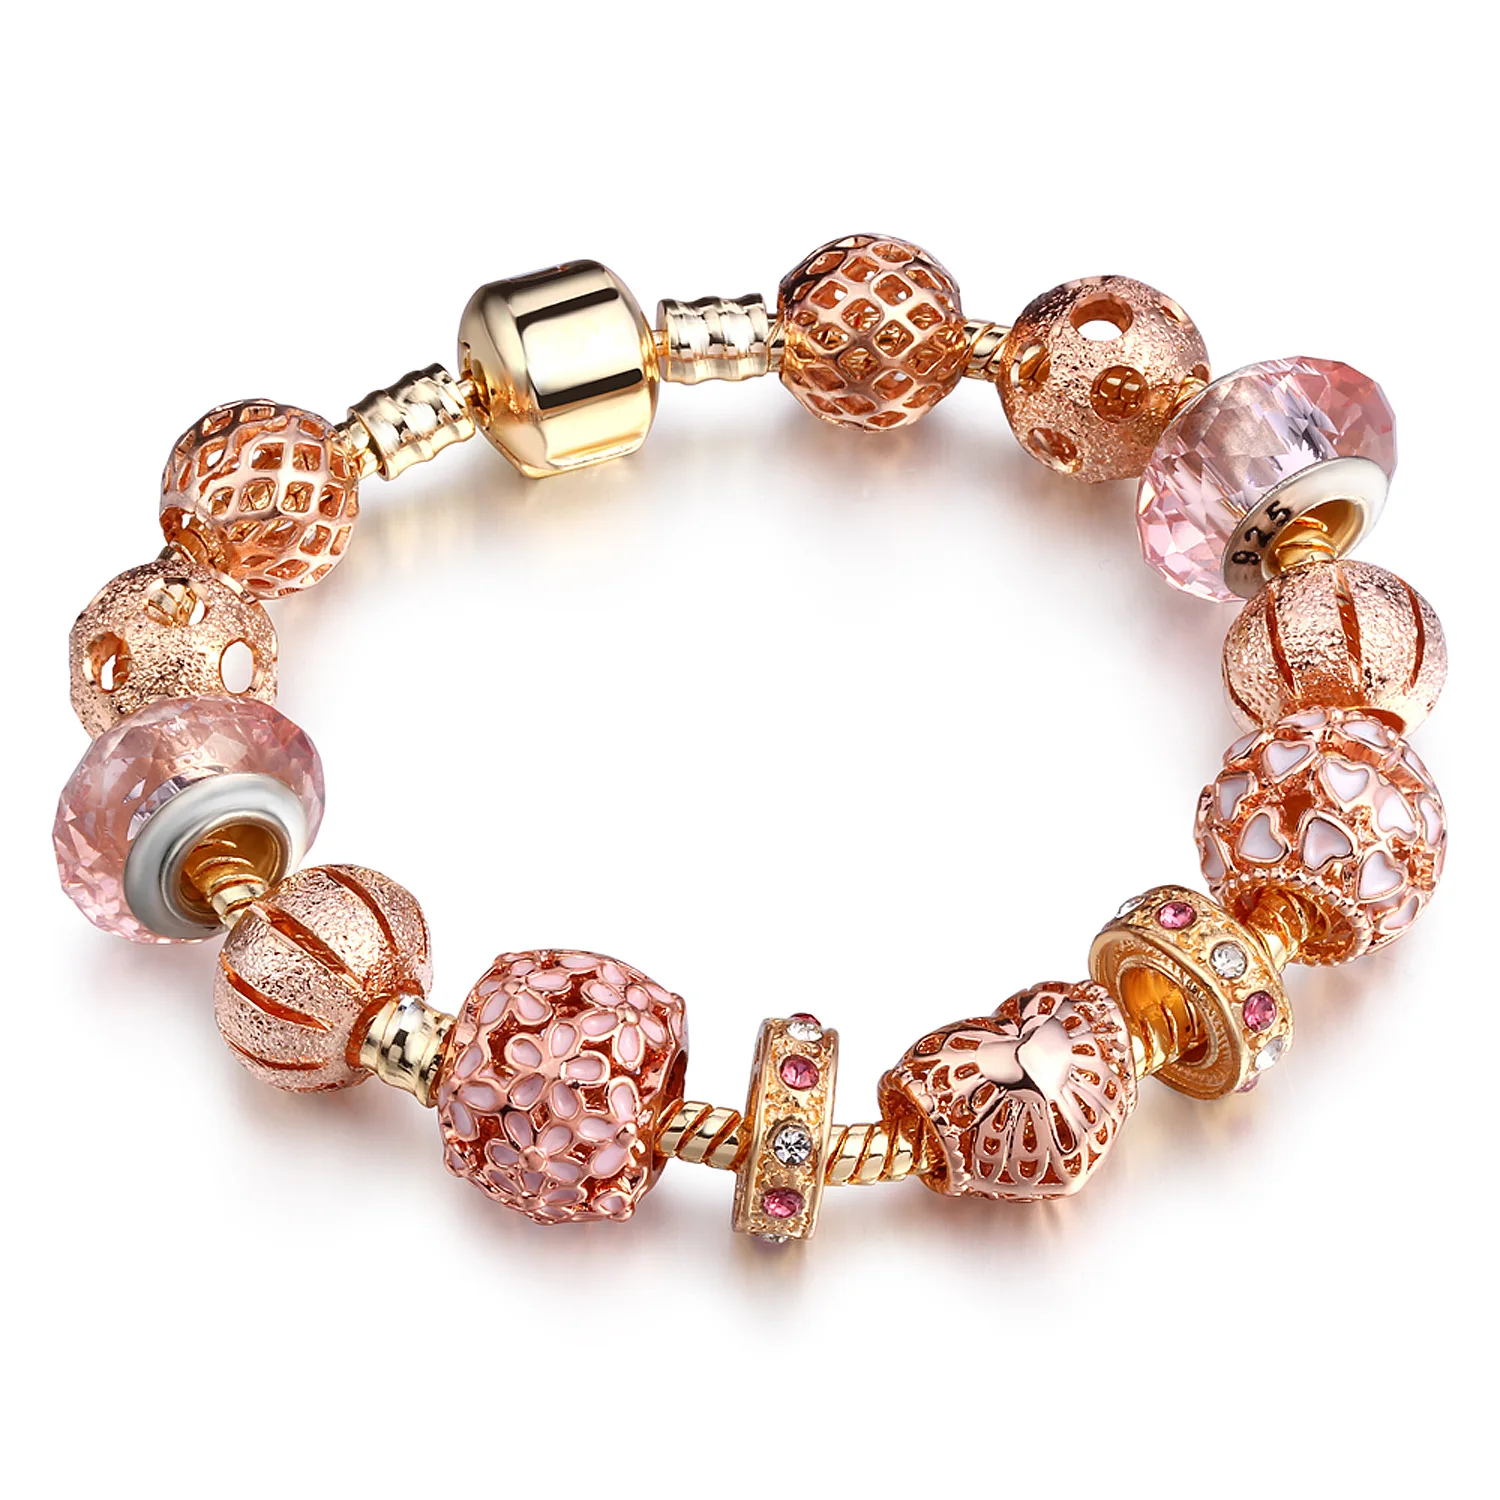 

European Hotsale Austrian Crystal Bead Charm Bracelet Rose Gold Plating Oil Drip Flower Charm Bracelet For Gifts